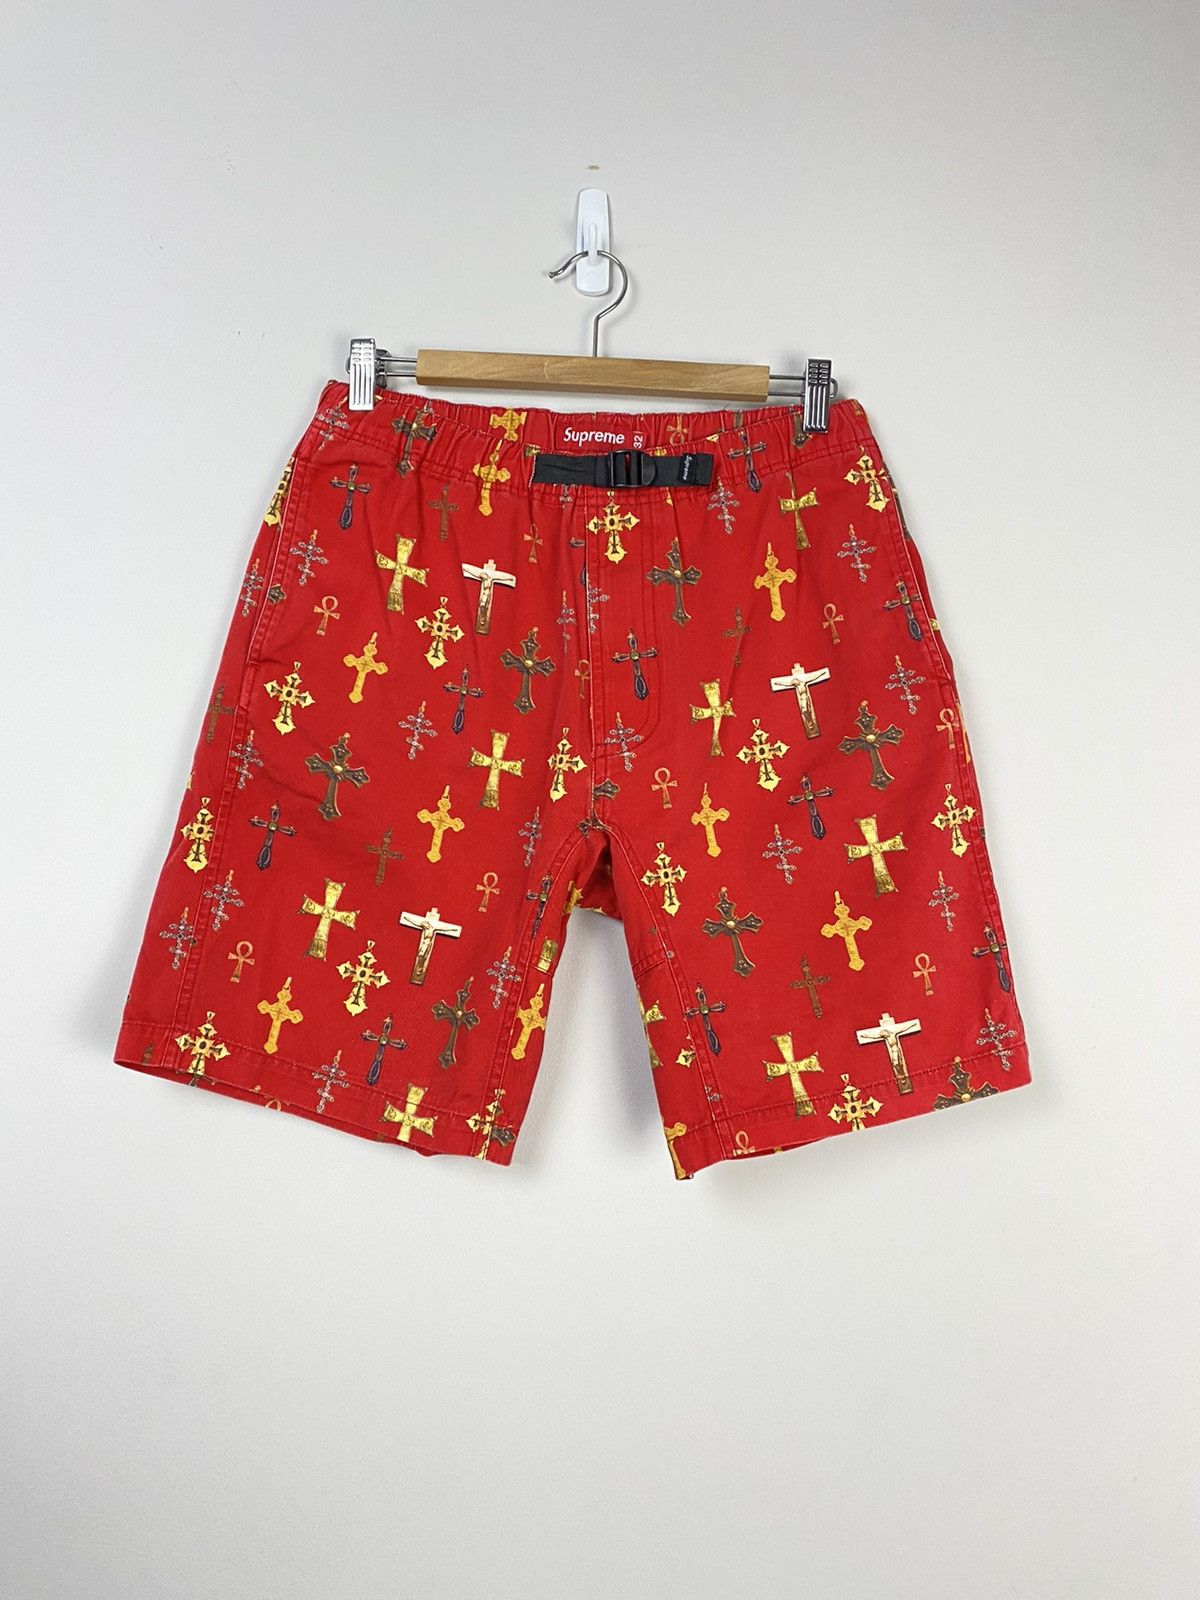 全国販売店 【希少】Supreme 13SS Crosses Belted Shorts